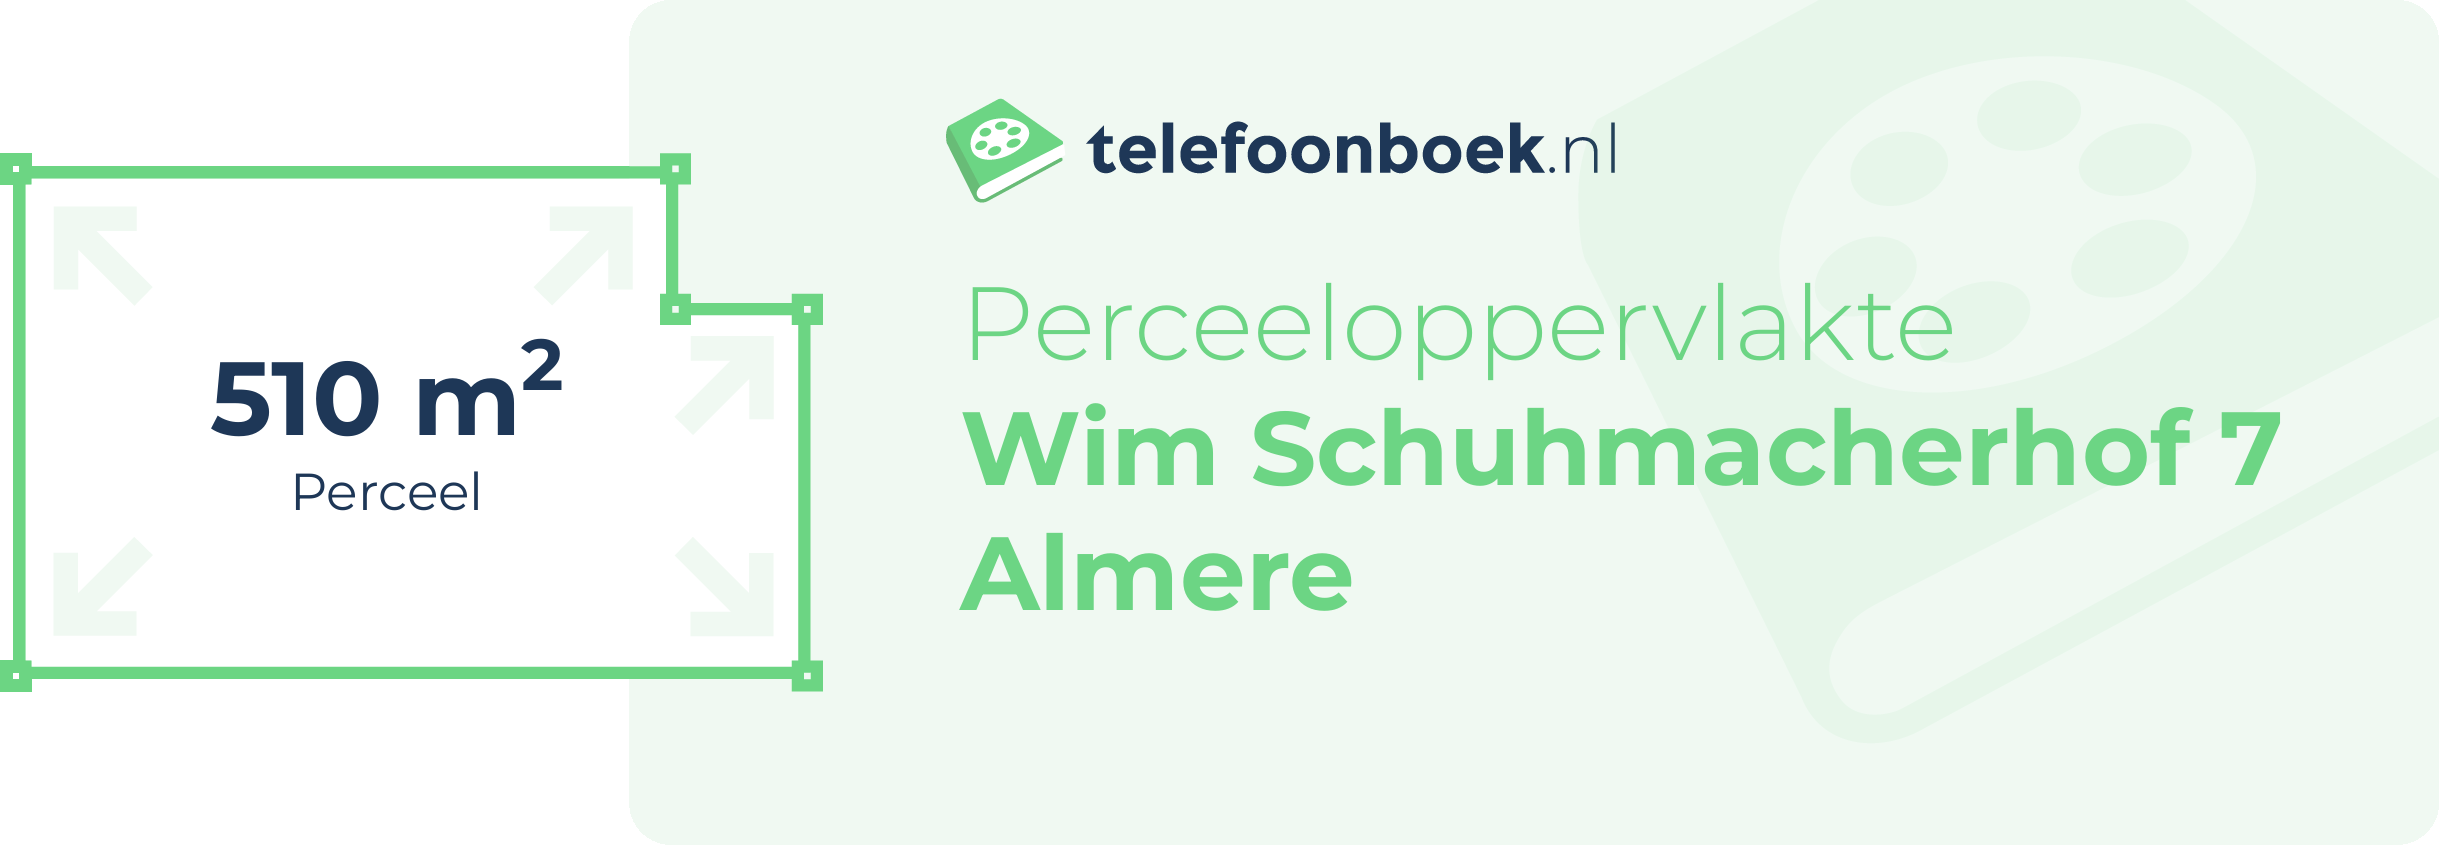 Perceeloppervlakte Wim Schuhmacherhof 7 Almere